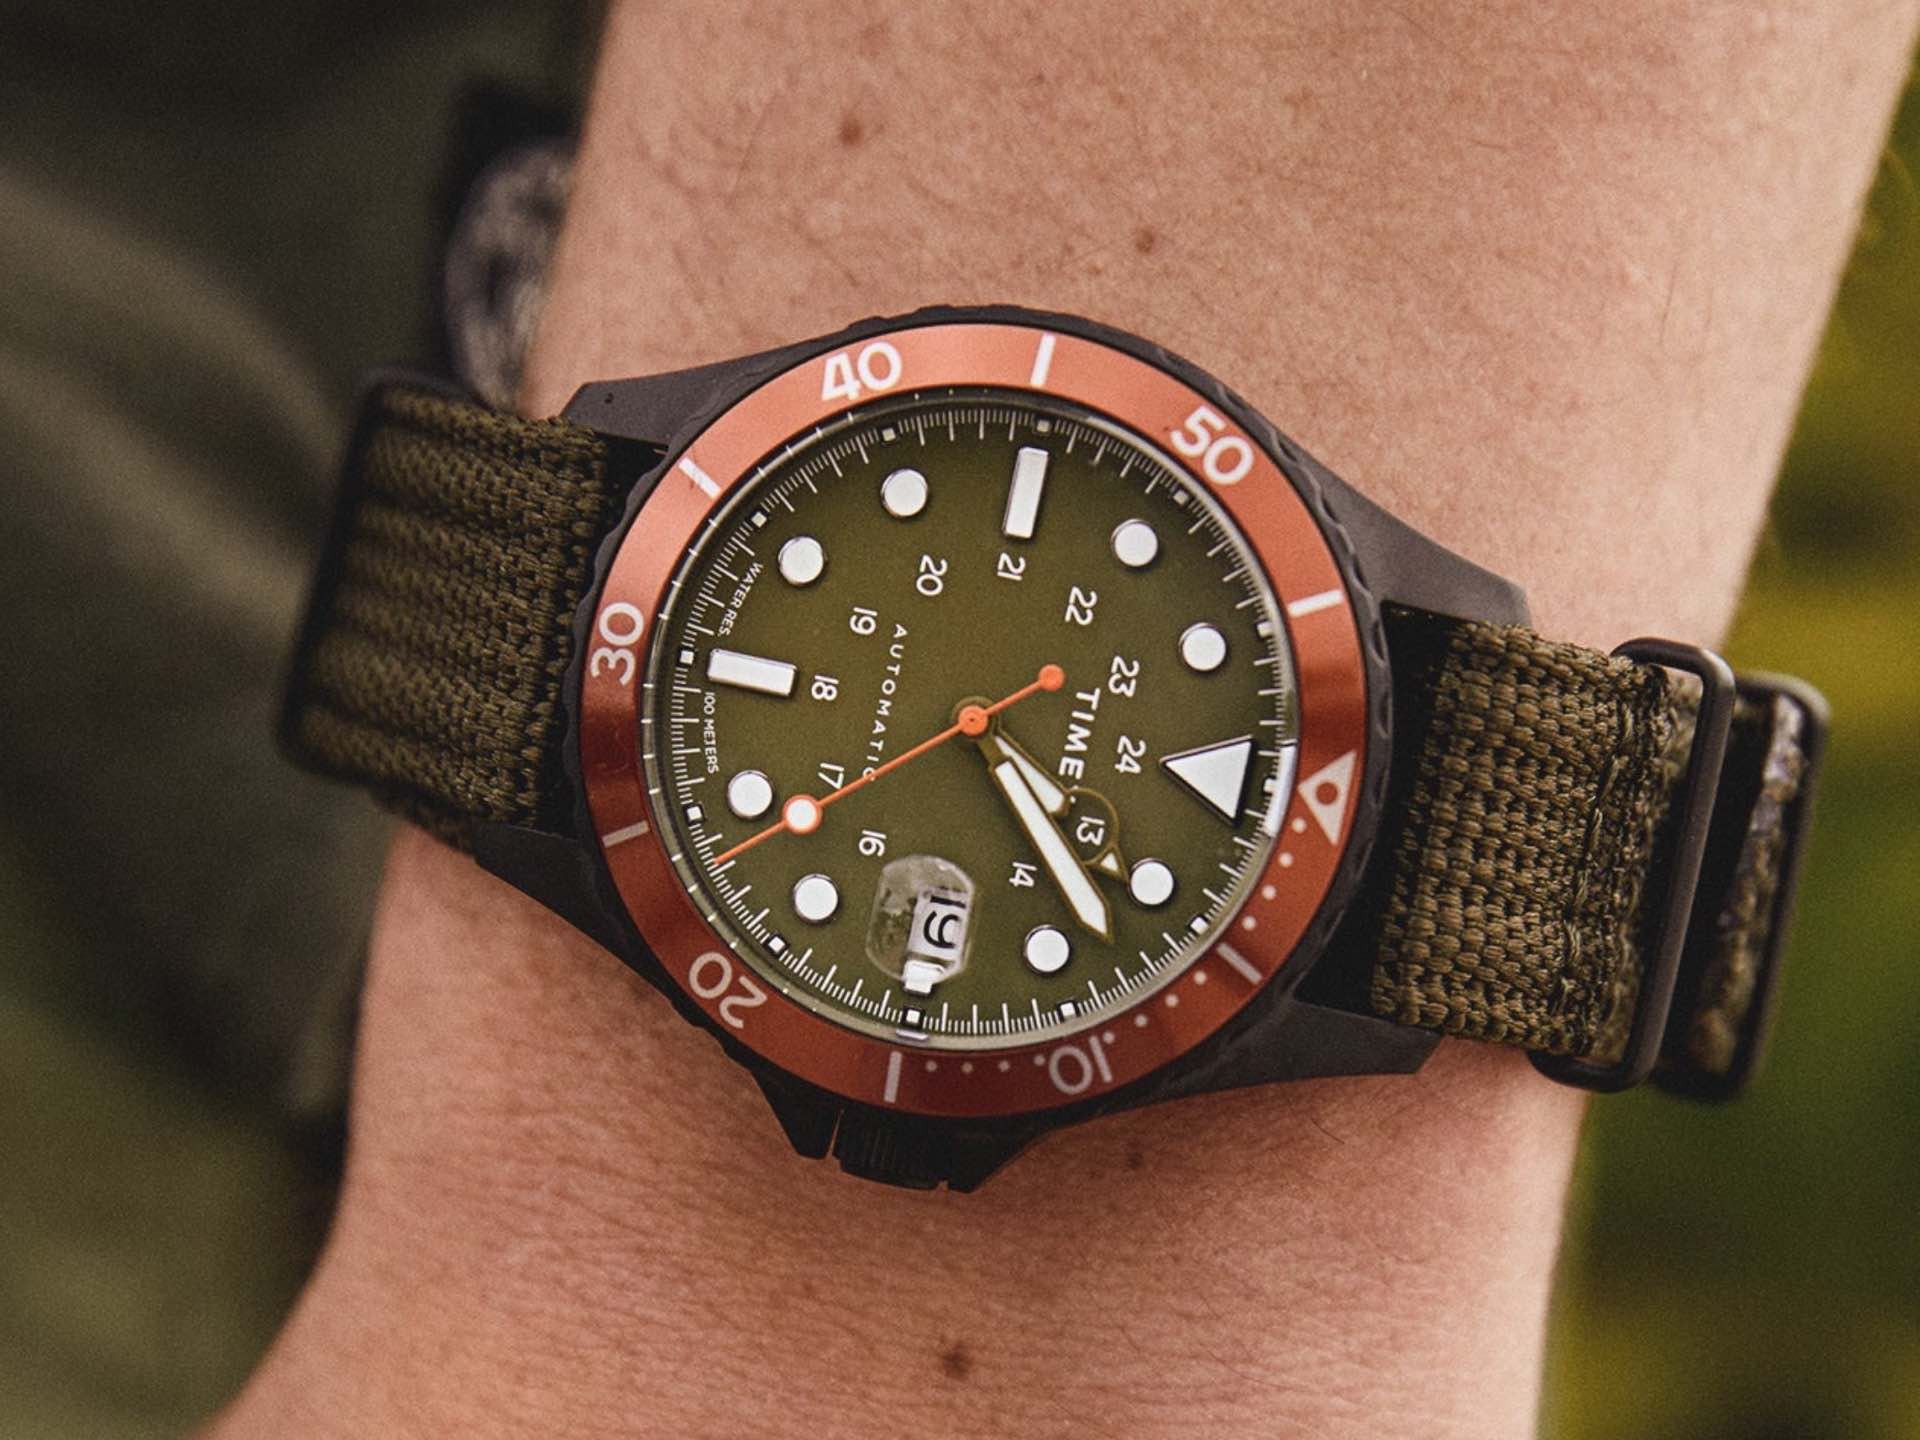 Timex x Todd Snyder Utility Ranger dive watch. ($259)